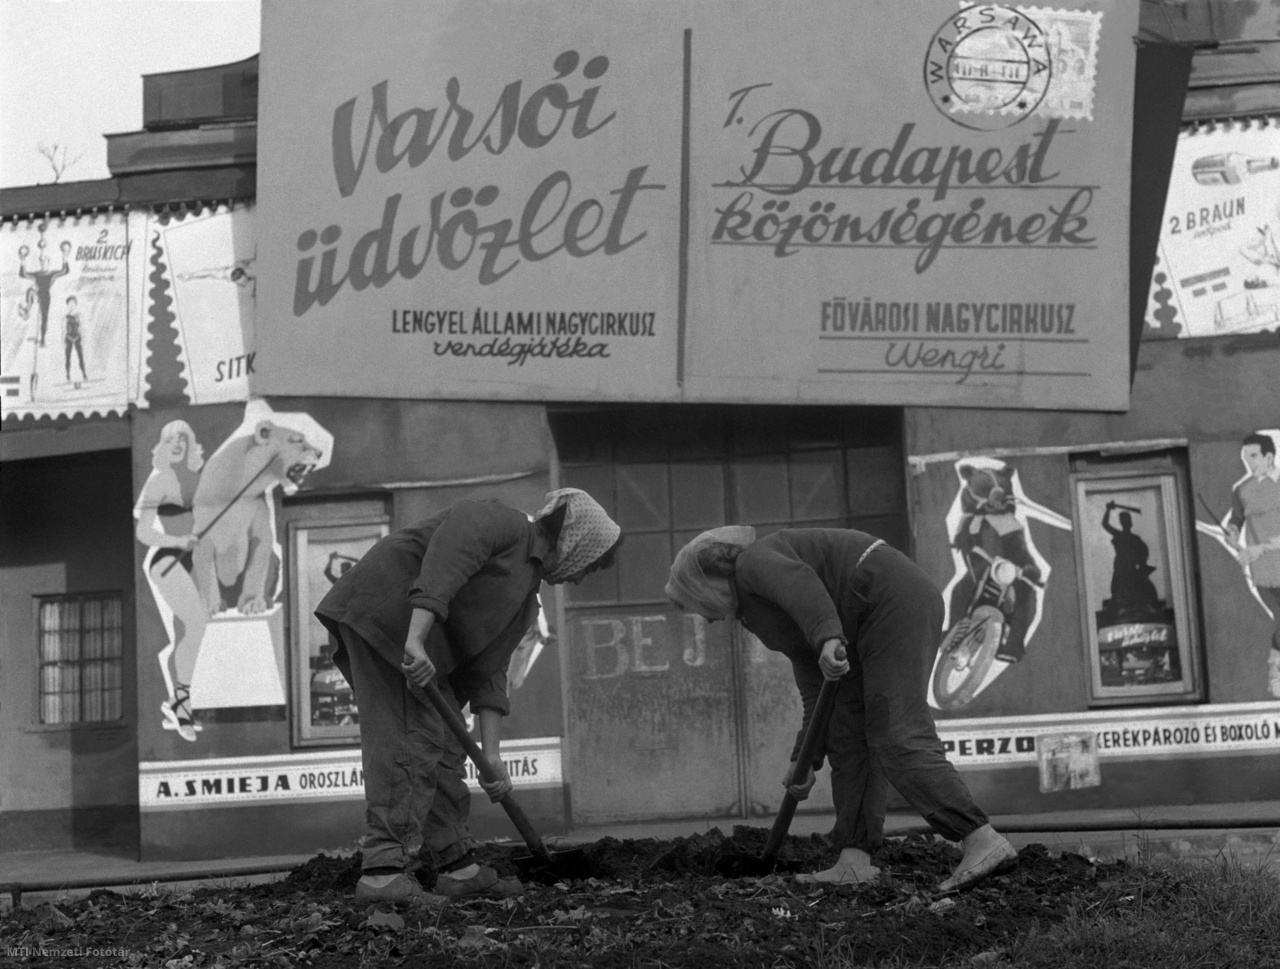 Budapest, 1964. október 14. Asszonyok ássák a földet egy épület előtt a reggeli órákban. Mögöttük az épületen a Fővárosi Nagycirkusznak címzett Varsói üdvözlet Budapest közönségének, a Lengyel Állami Nagycirkusz vendégjátékát hirdető tábla.